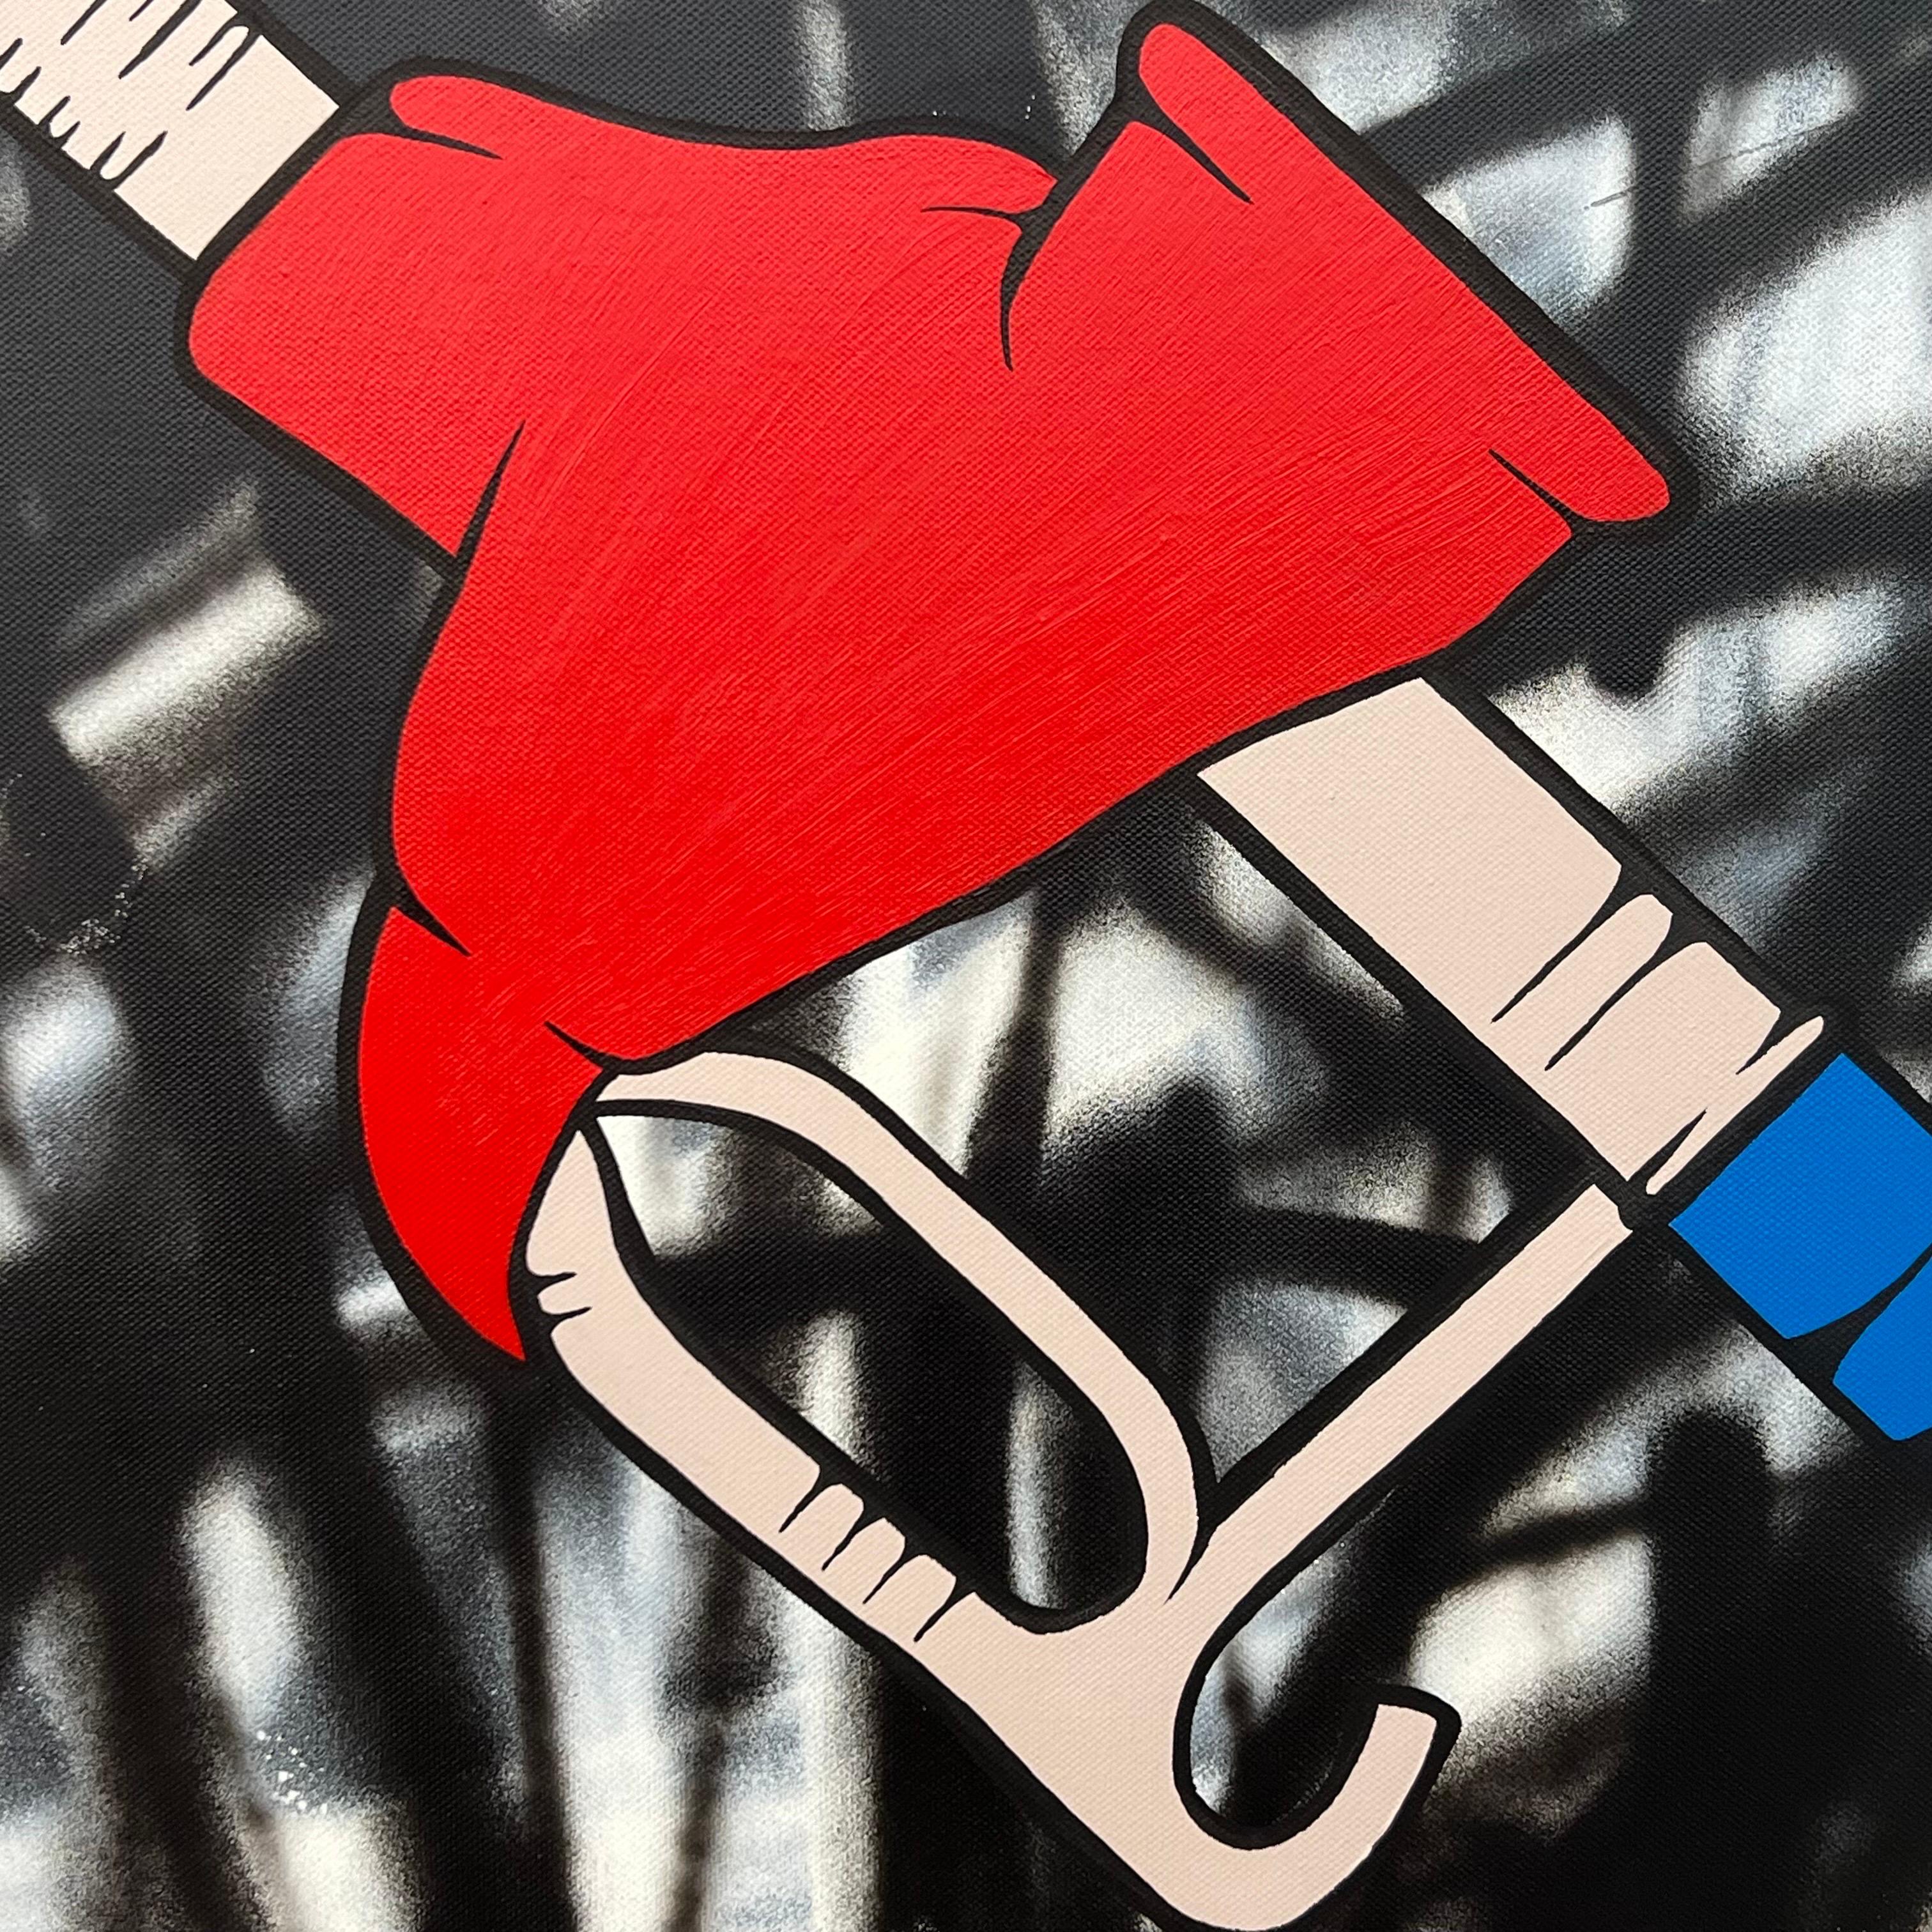 Öl- Gas-Flammen-Pump-Kunst auf abstraktem Hintergrund des britischen Graffiti-Künstlers (Pop-Art), Painting, von Chris Pegg